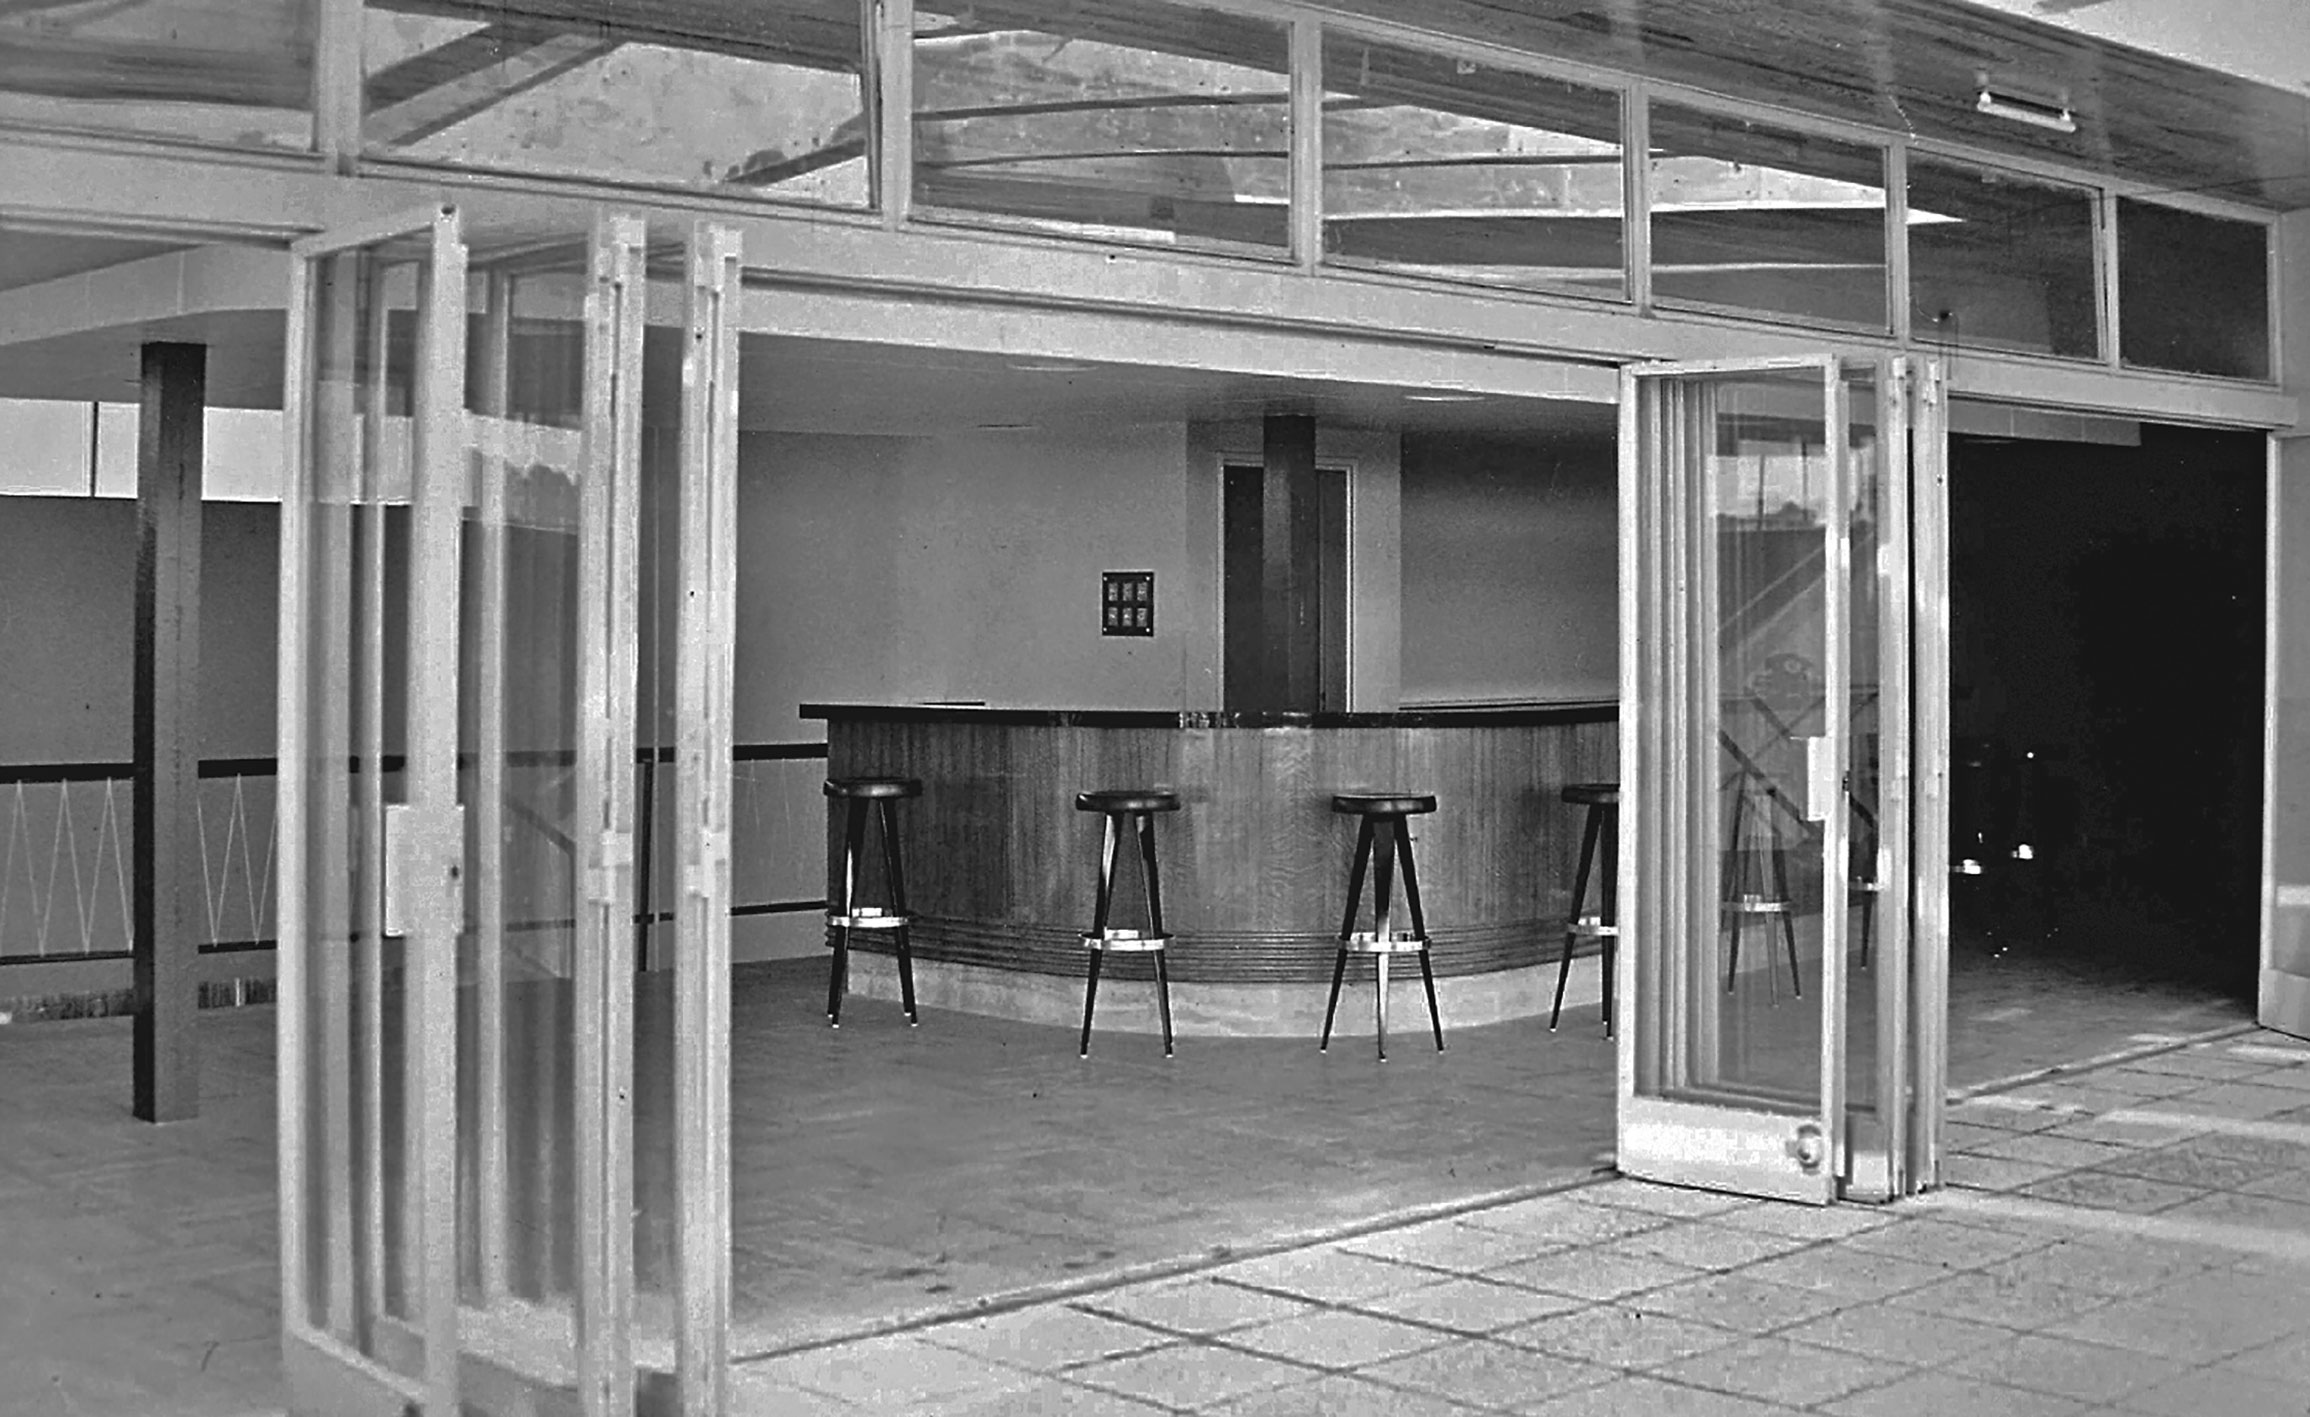 Commissariat à l’énergie atomique, centre de Marcoule, Bagnols-sur-Cèze. L’espace bar du réfectoire équipé de tabourets hauts, c. 1955.